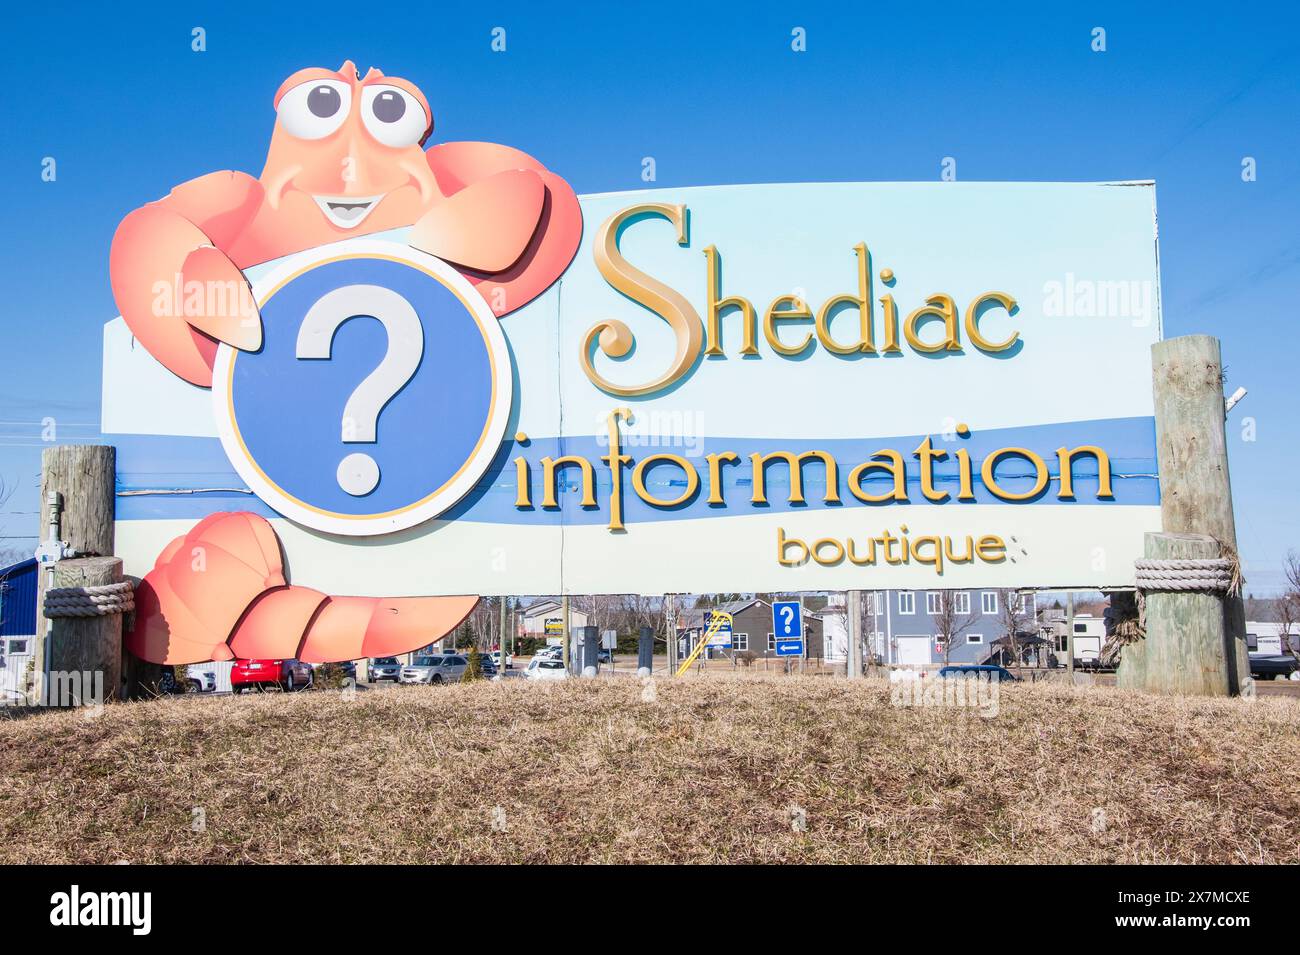 Enseigne de la boutique d'information Shediac au Nouveau-Brunswick, Canada Banque D'Images